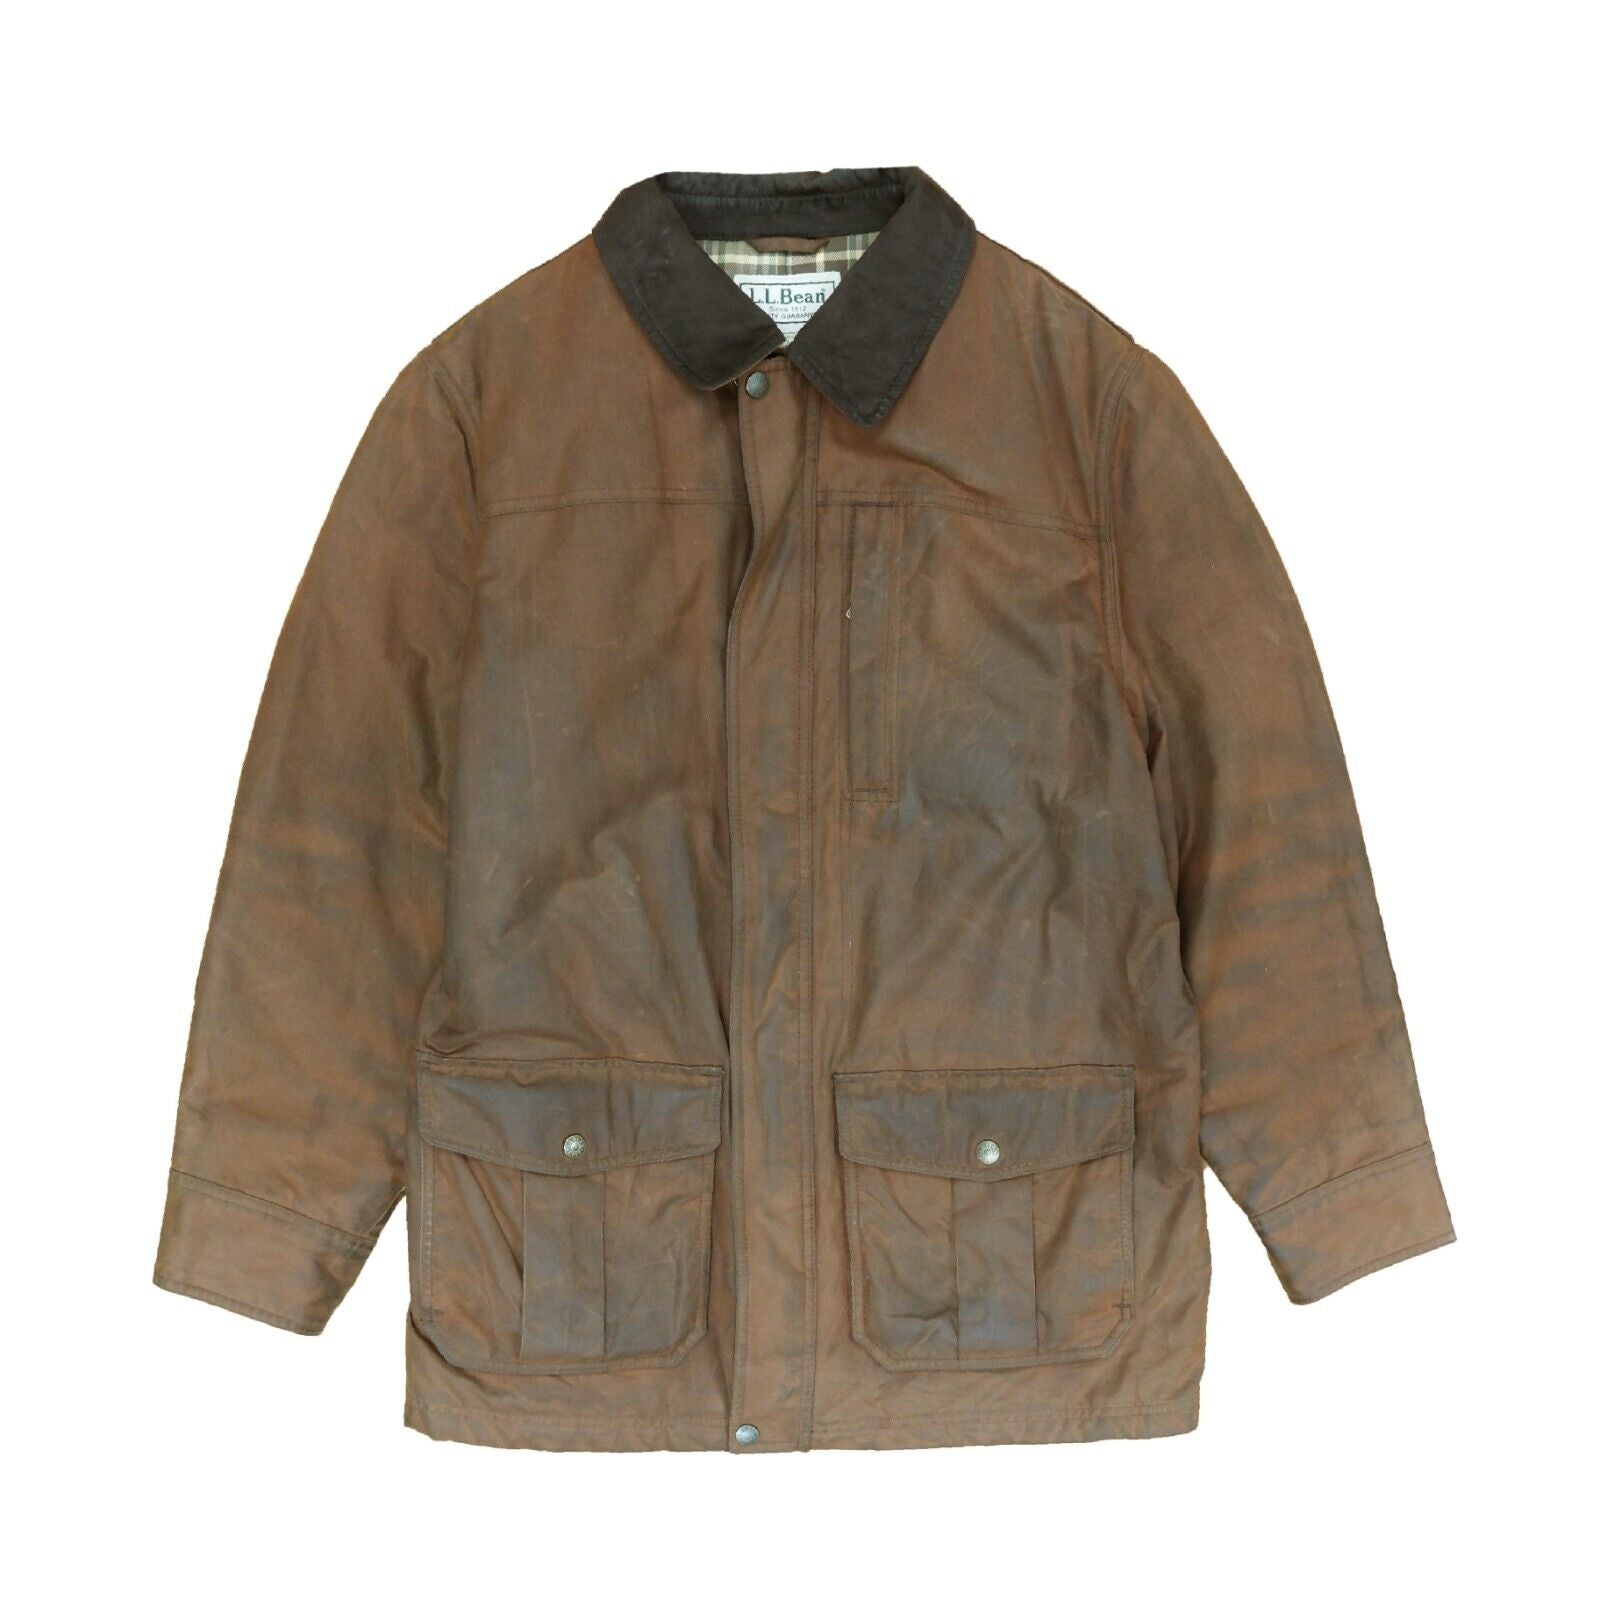 90s L.L.BEAN leather cotton jacket